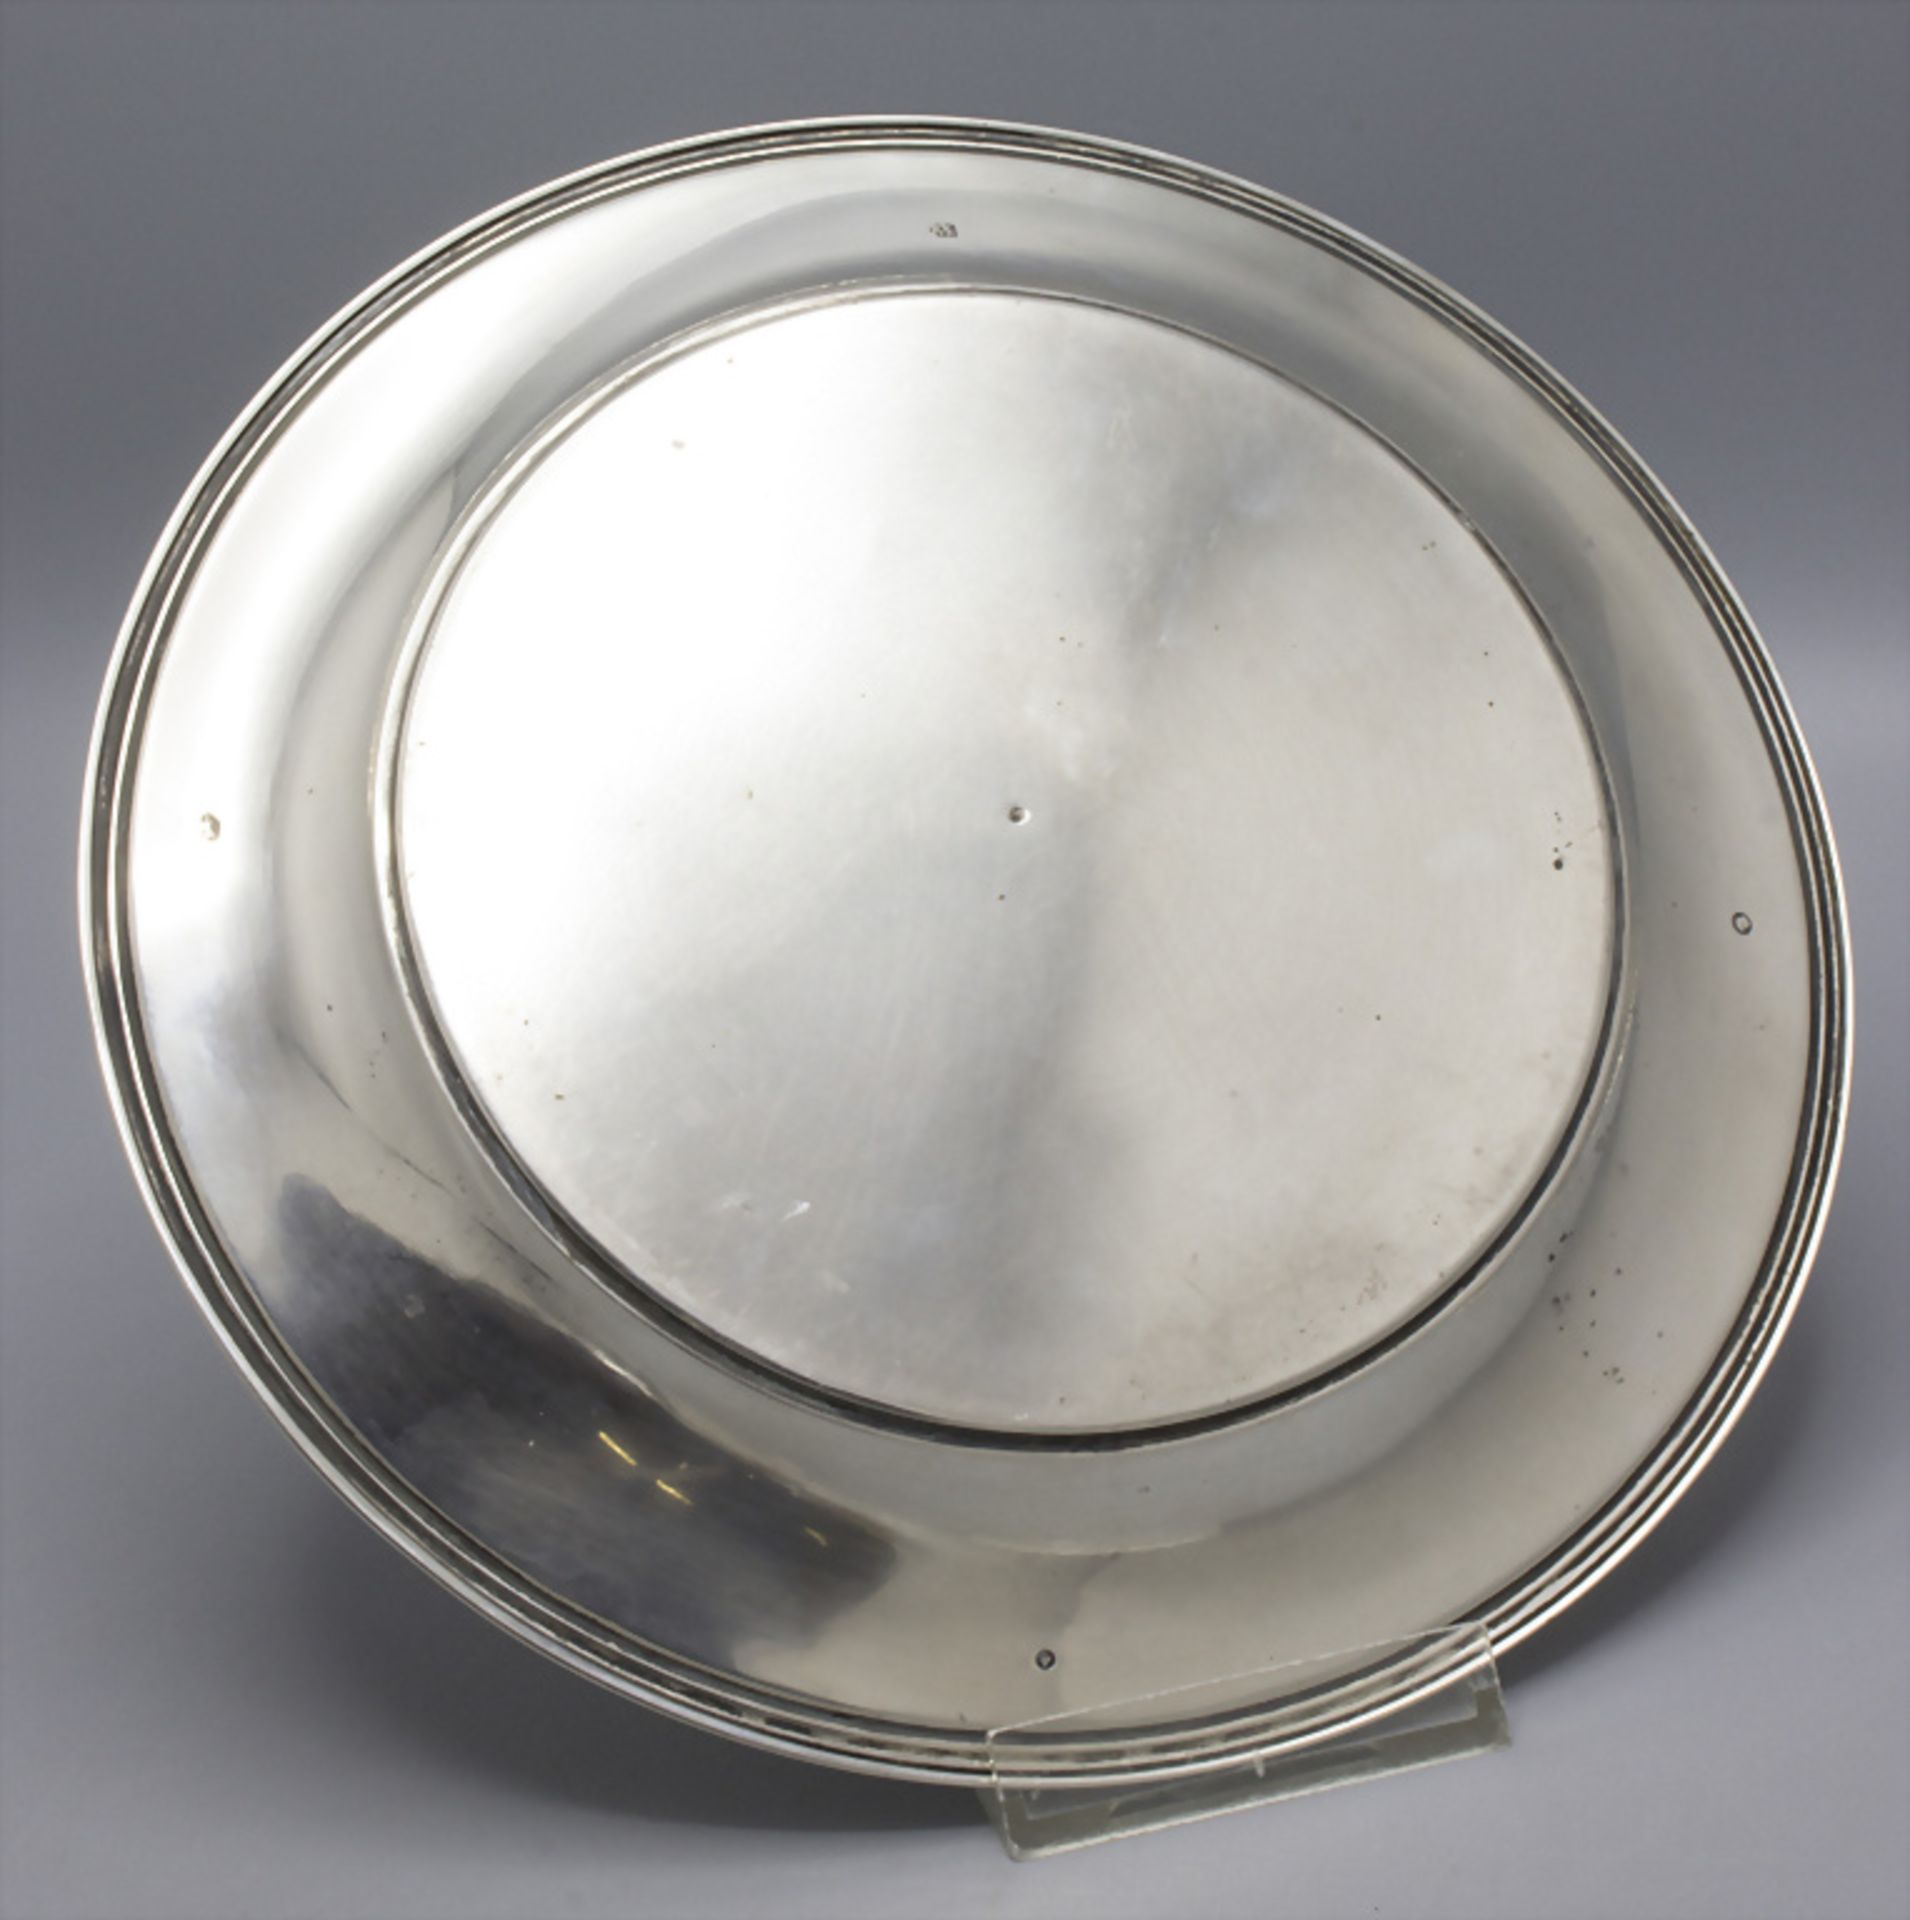 Silberteller / A silver plate, van Kempen, The Hague, 1869 - Image 3 of 7